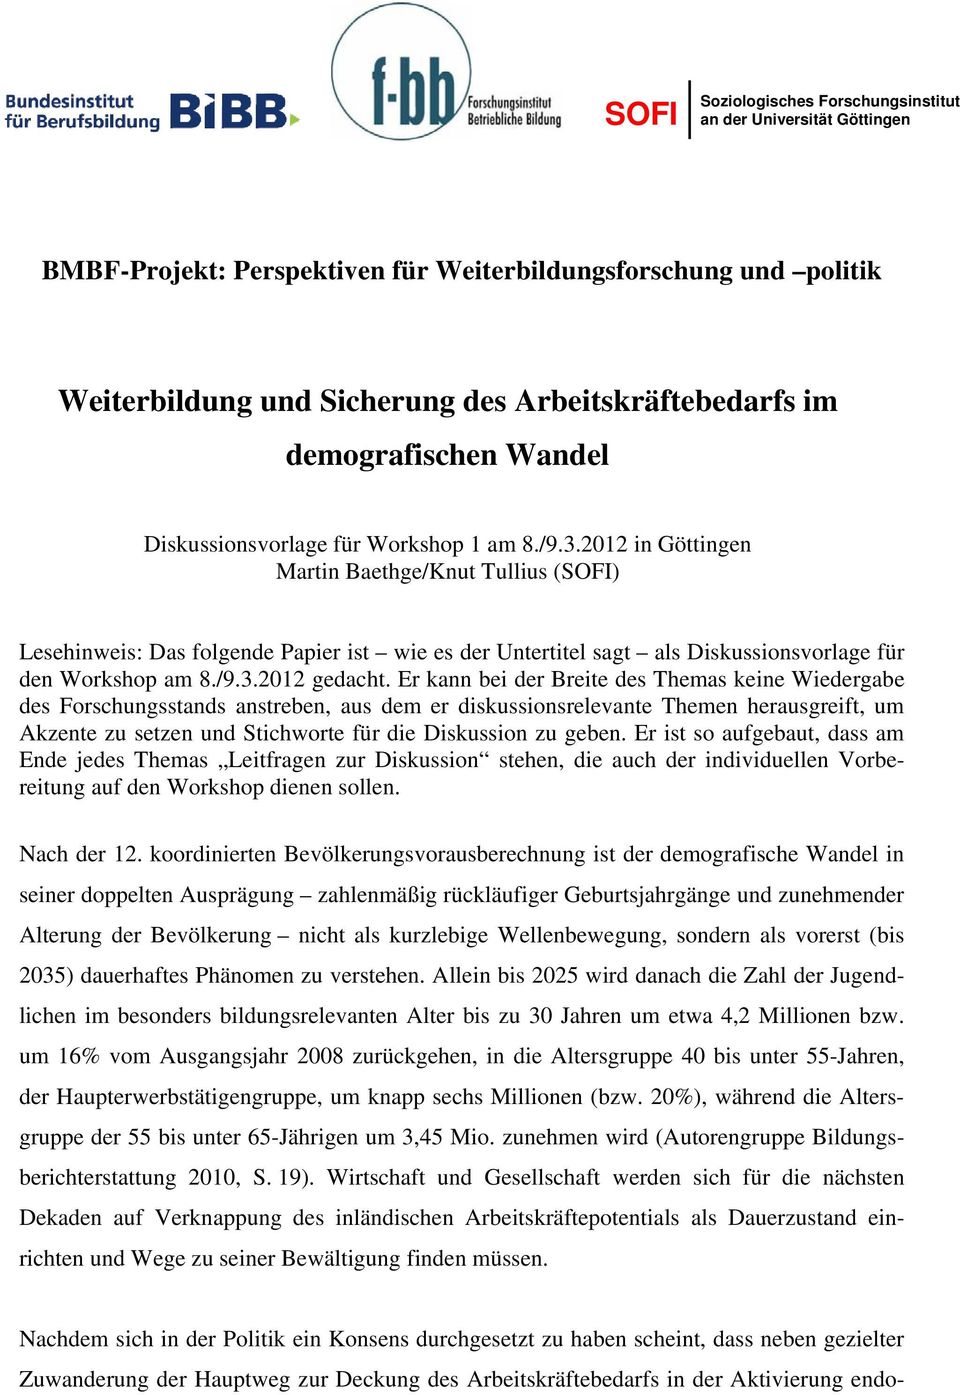 2012 in Göttingen Martin Baethge/Knut Tullius (SOFI) Lesehinweis: Das folgende Papier ist wie es der Untertitel sagt als Diskussionsvorlage für den Workshop am 8./9.3.2012 gedacht.